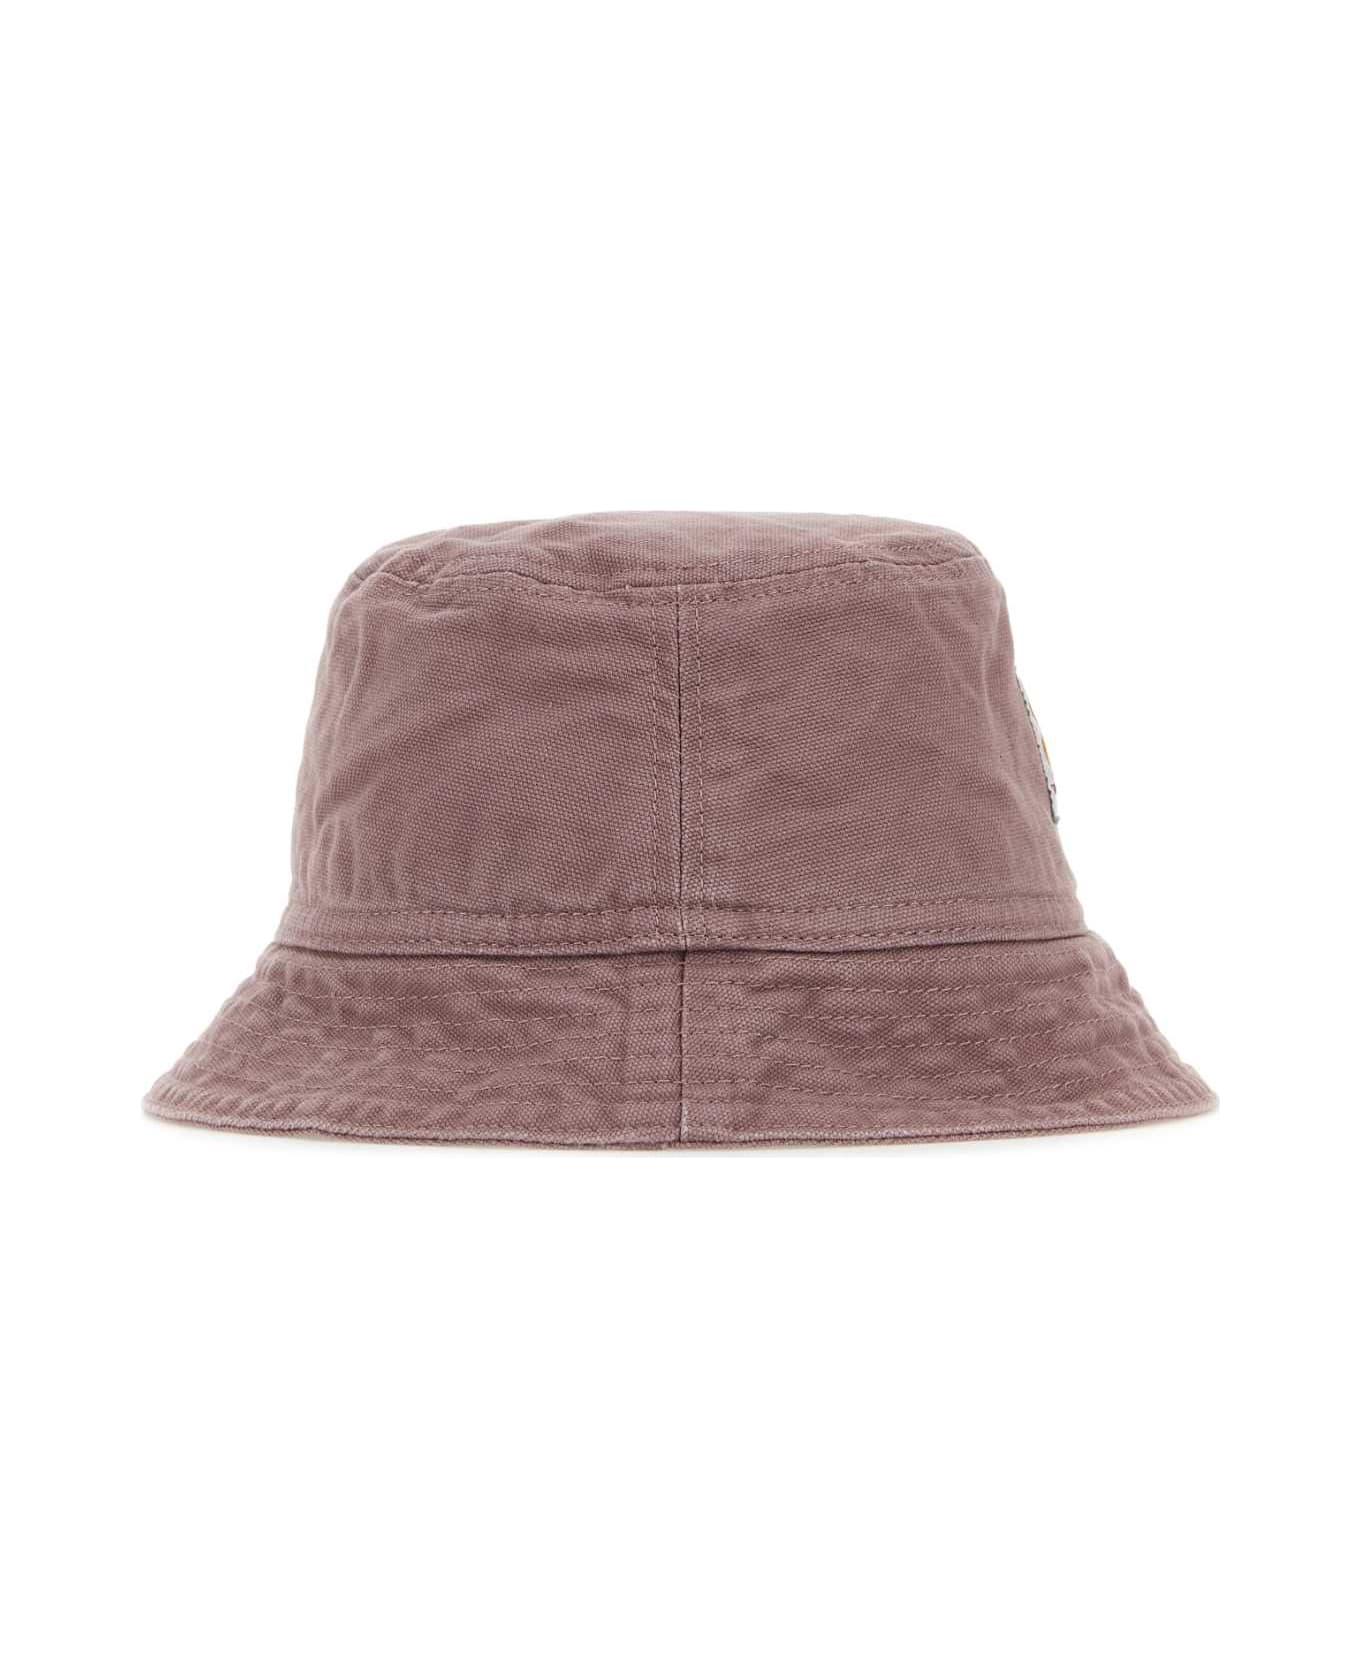 Carhartt Antiqued Pink Cotton Bayfield Bucket Hat - BLK 帽子